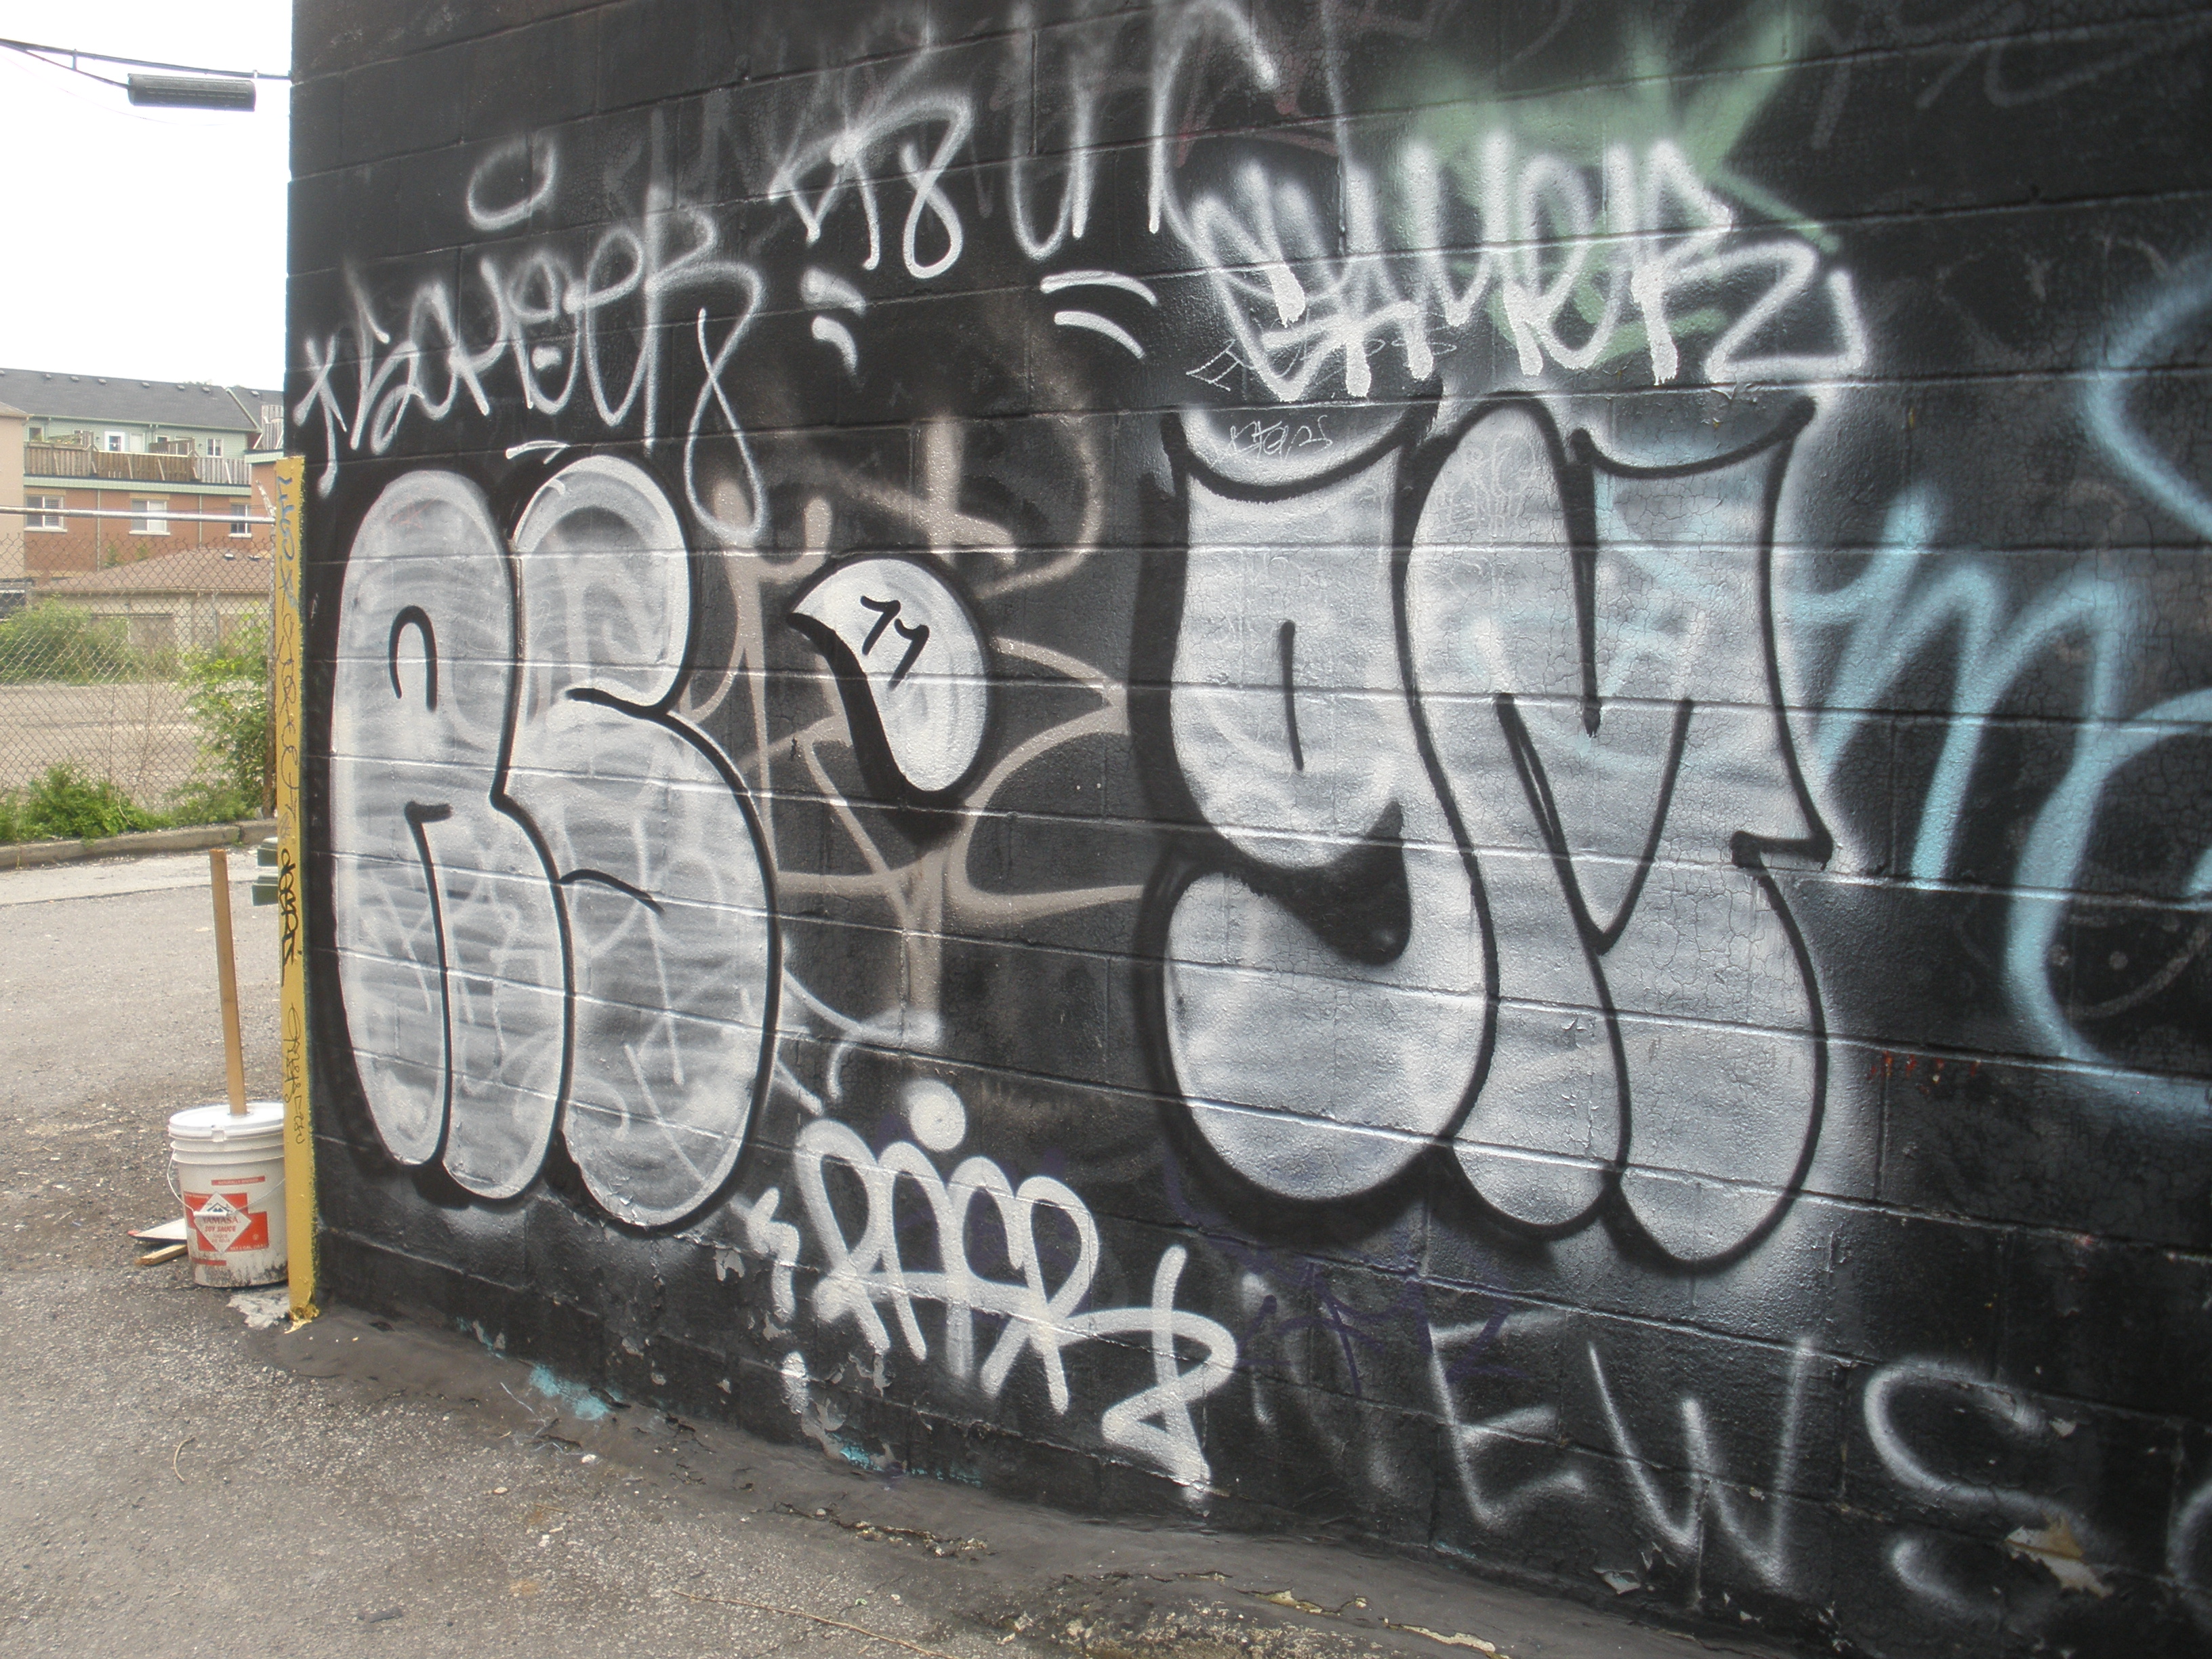 Rasr Toronto graffiti picture